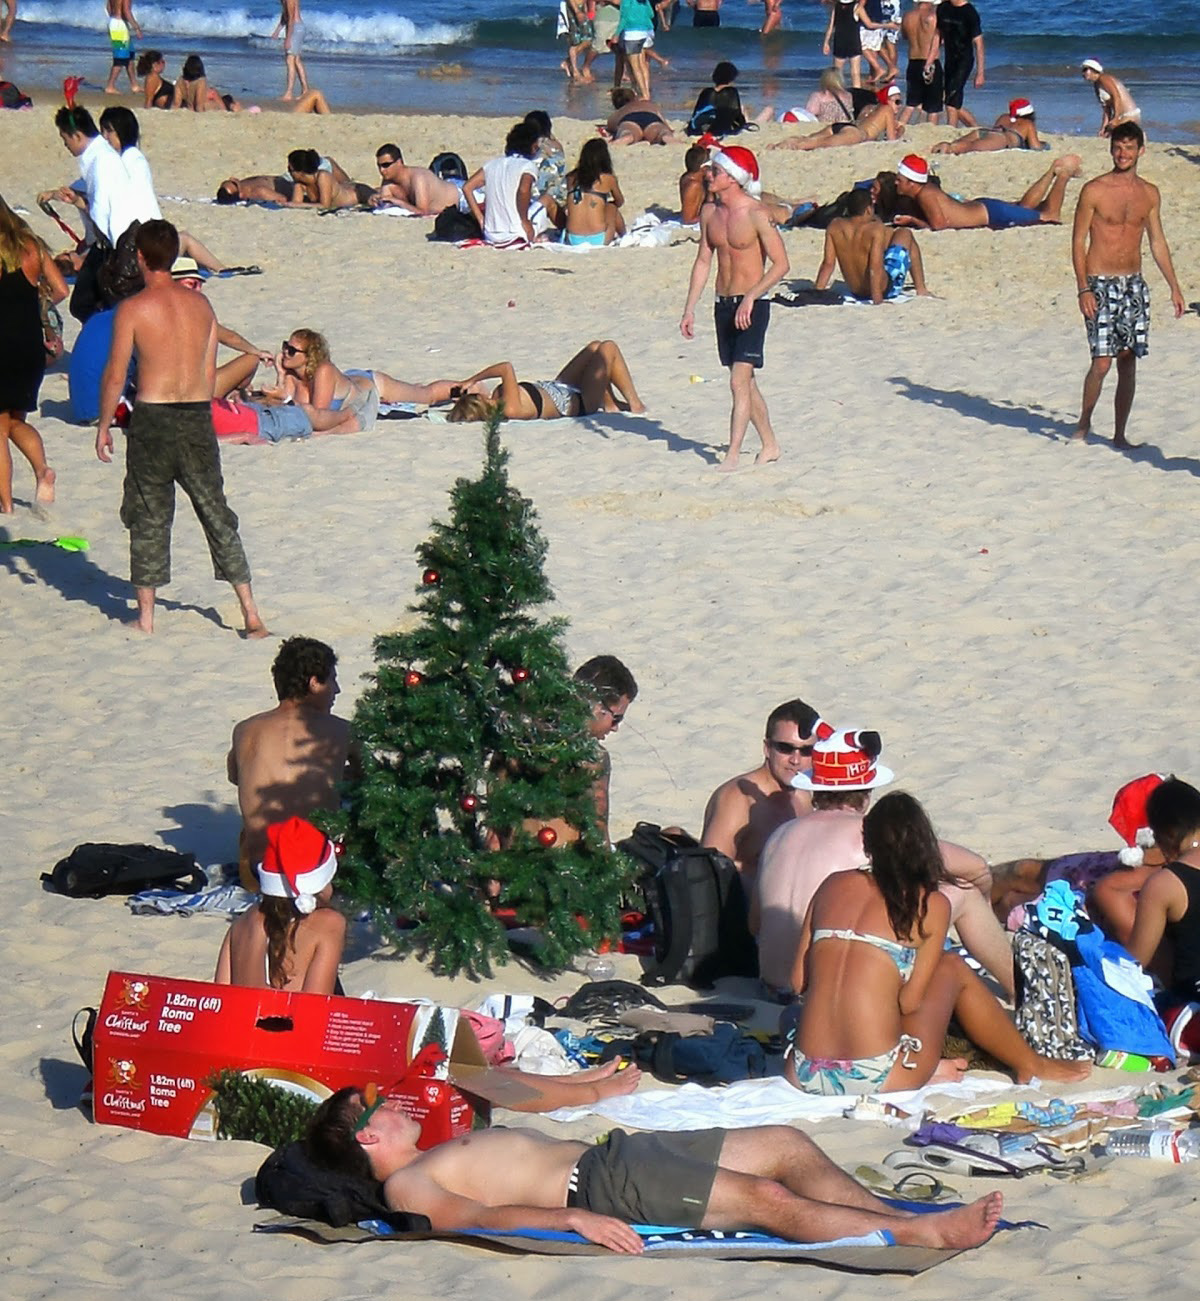 Da Quando Si Festeggia Il Natale.Natale In Australia Come Si Festeggia Dall Altra Parte Del Mondo